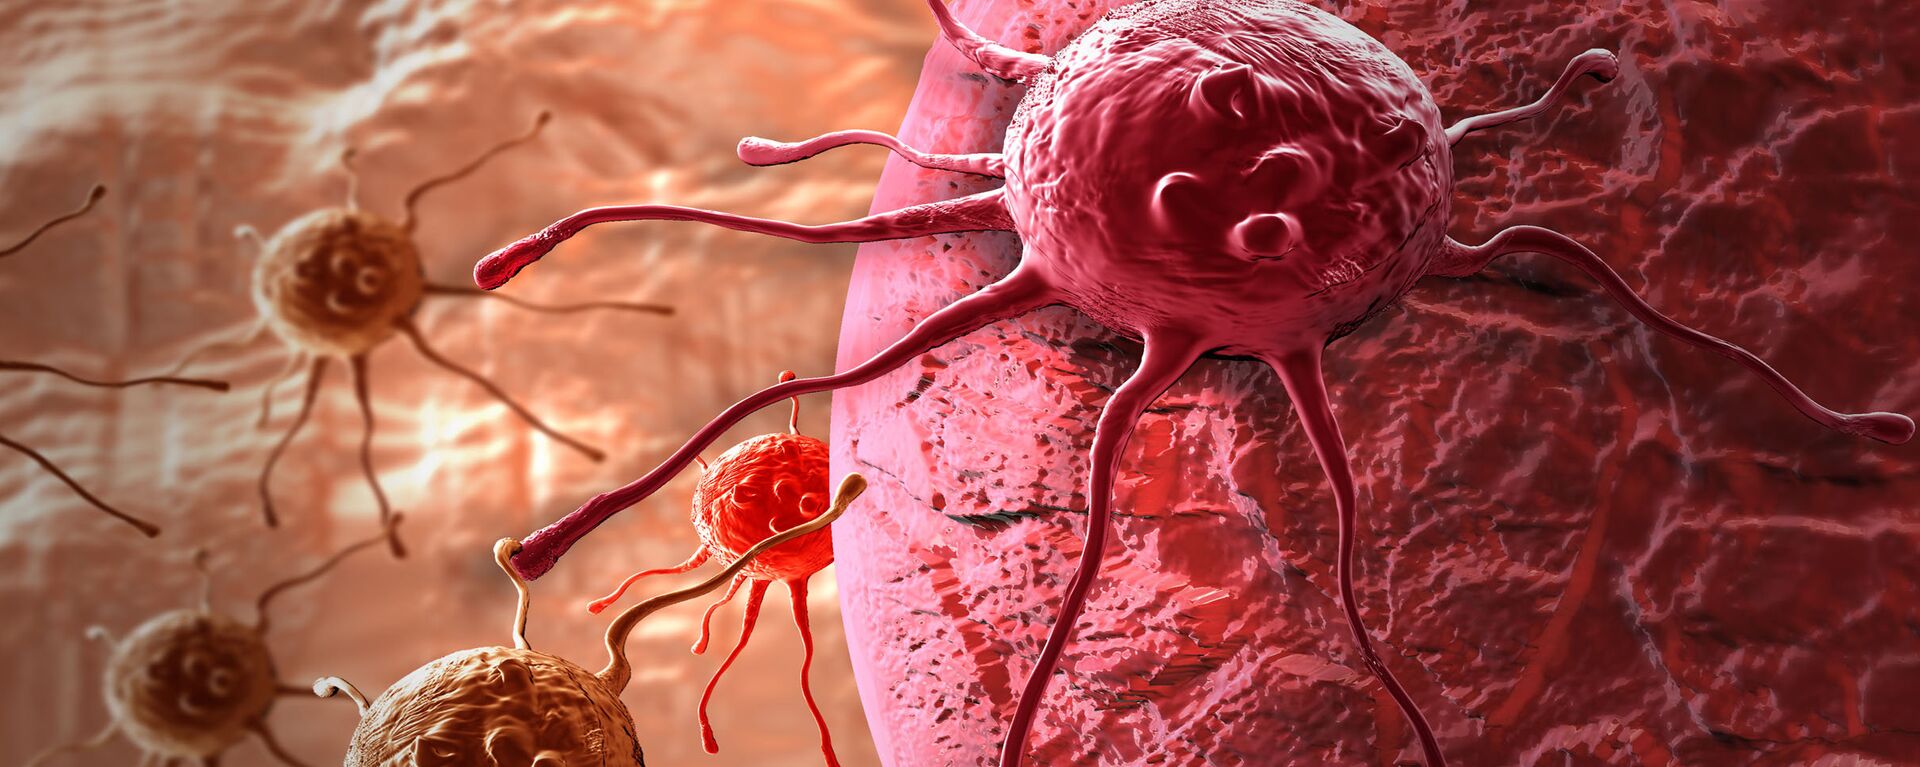 خلايا سرطانية  - سبوتنيك عربي, 1920, 07.12.2020